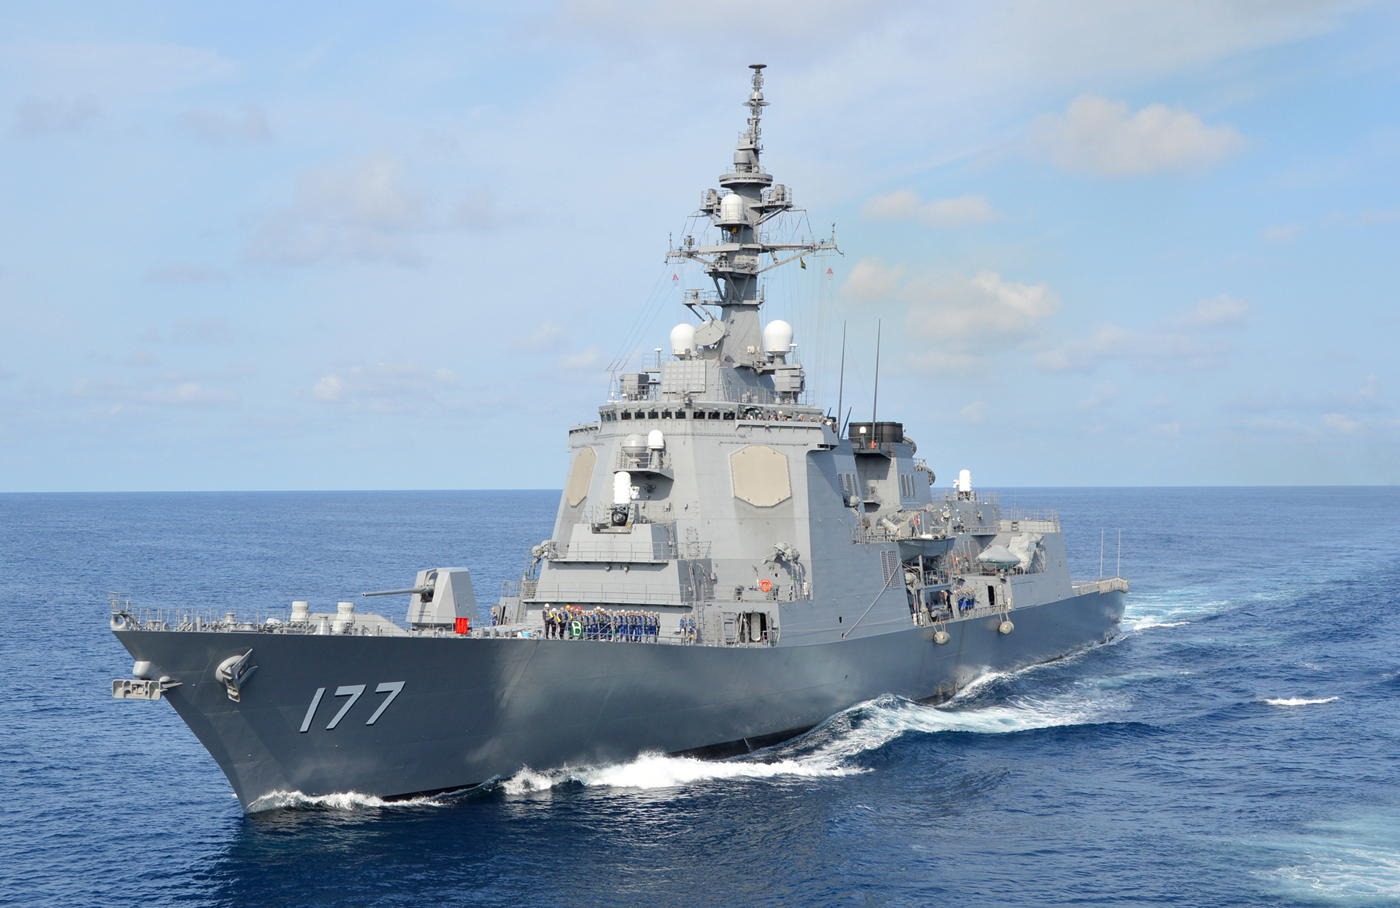 イージス艦2隻新造を閣議決定へ…地上配備撤回の代替策